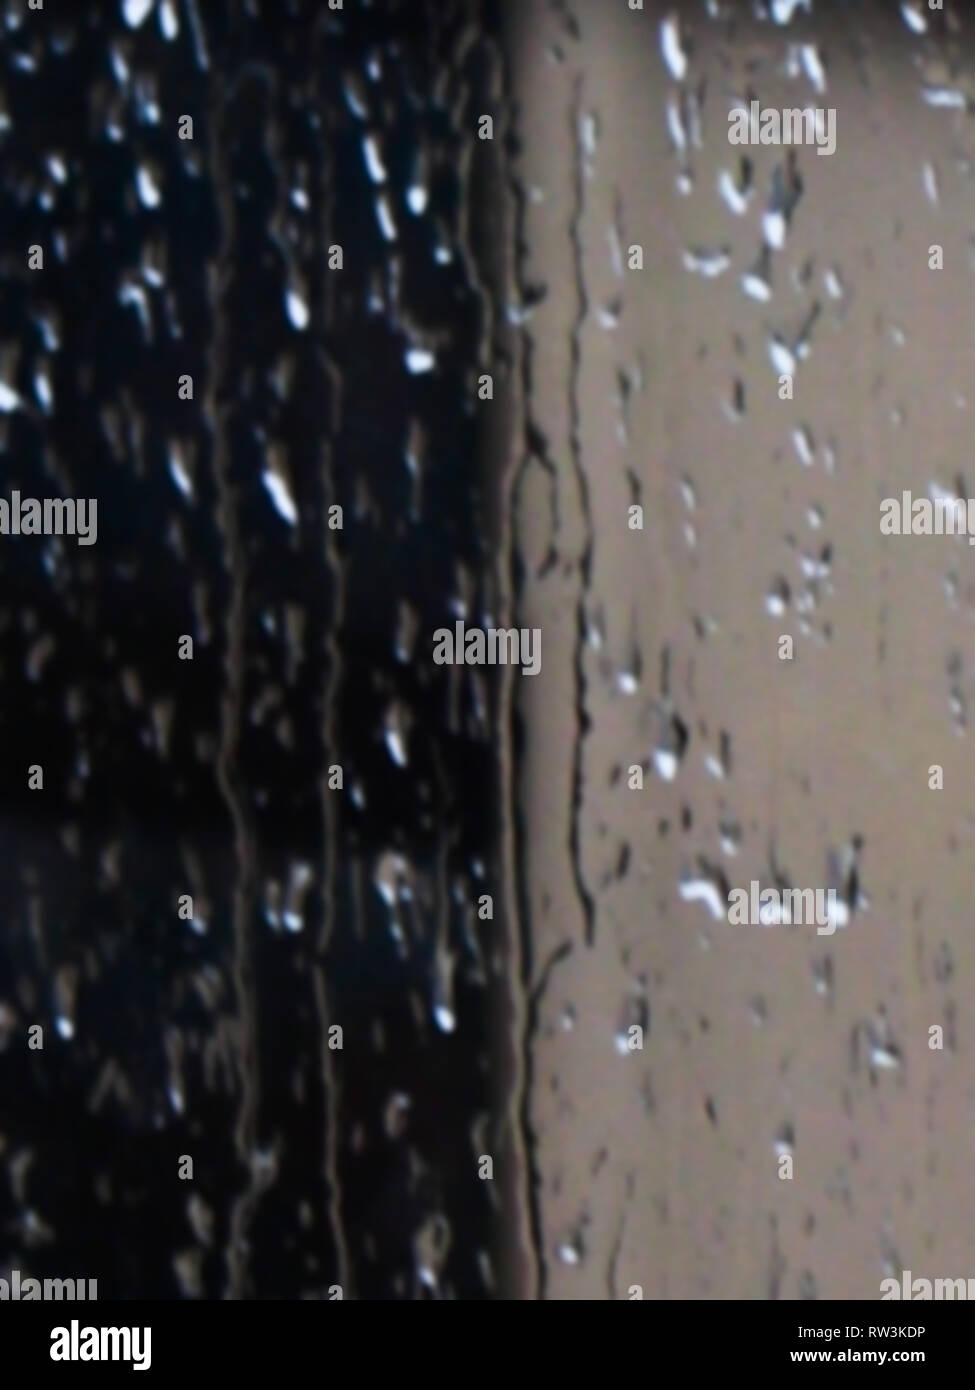 Détail d'un arrière-plan aléatoire humide des gouttelettes de pluie éclabousser et s'écoule dans une fenêtre en verre d'une nuit d'automne orageux Banque D'Images